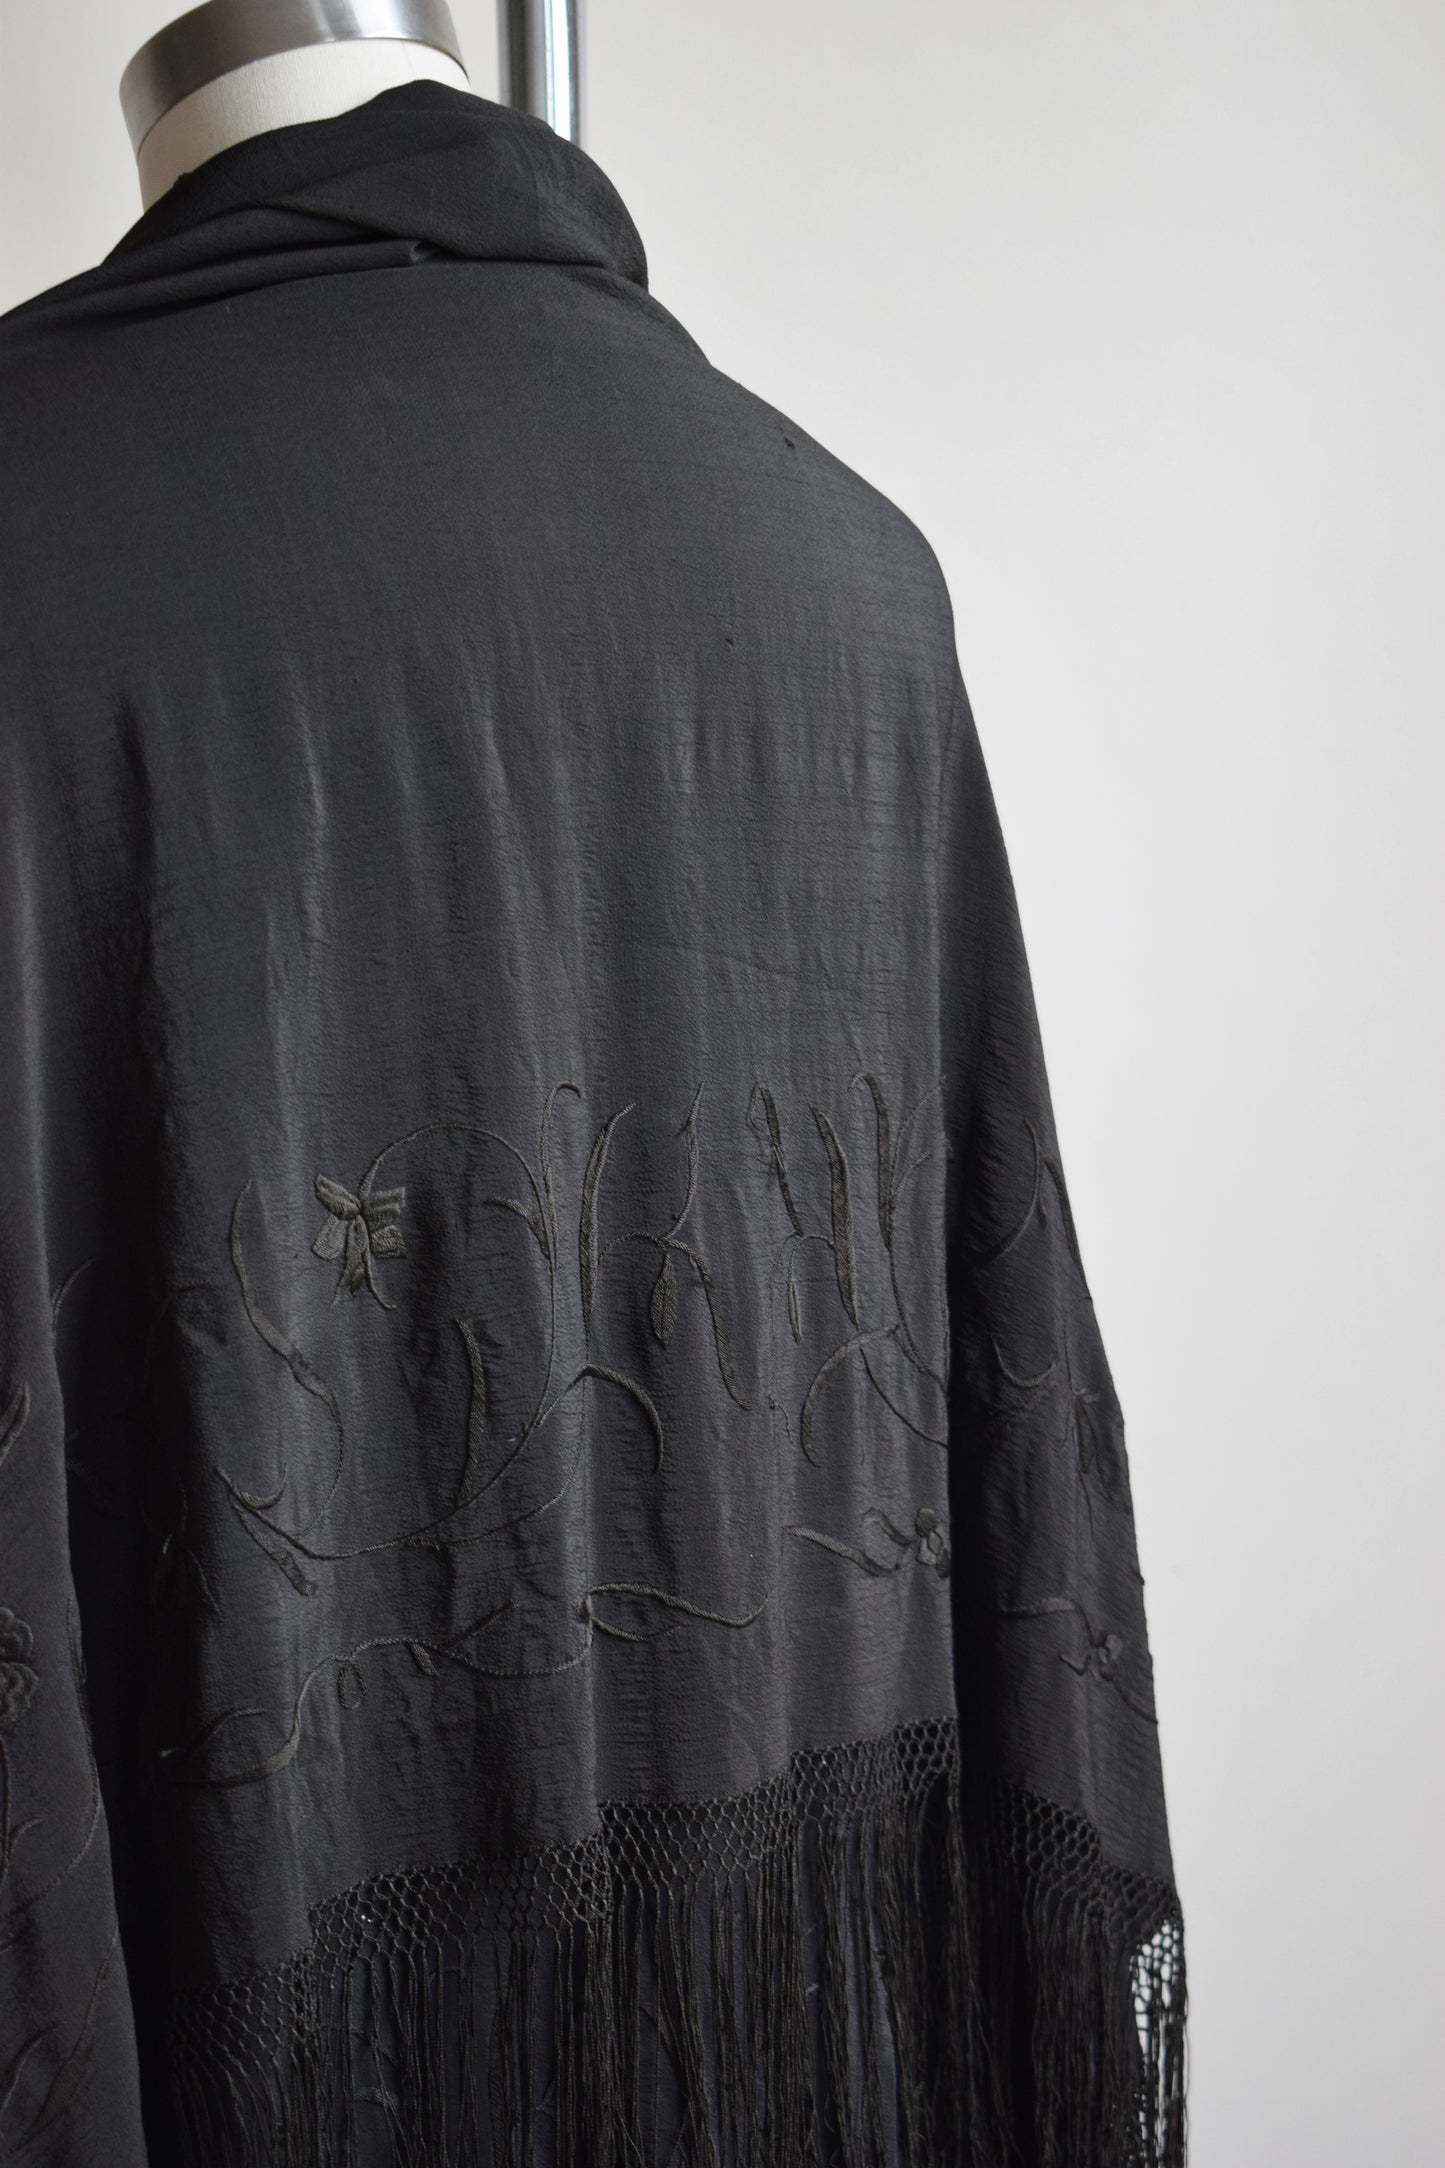 Antique Black Embroidered Silk Piano Shawl